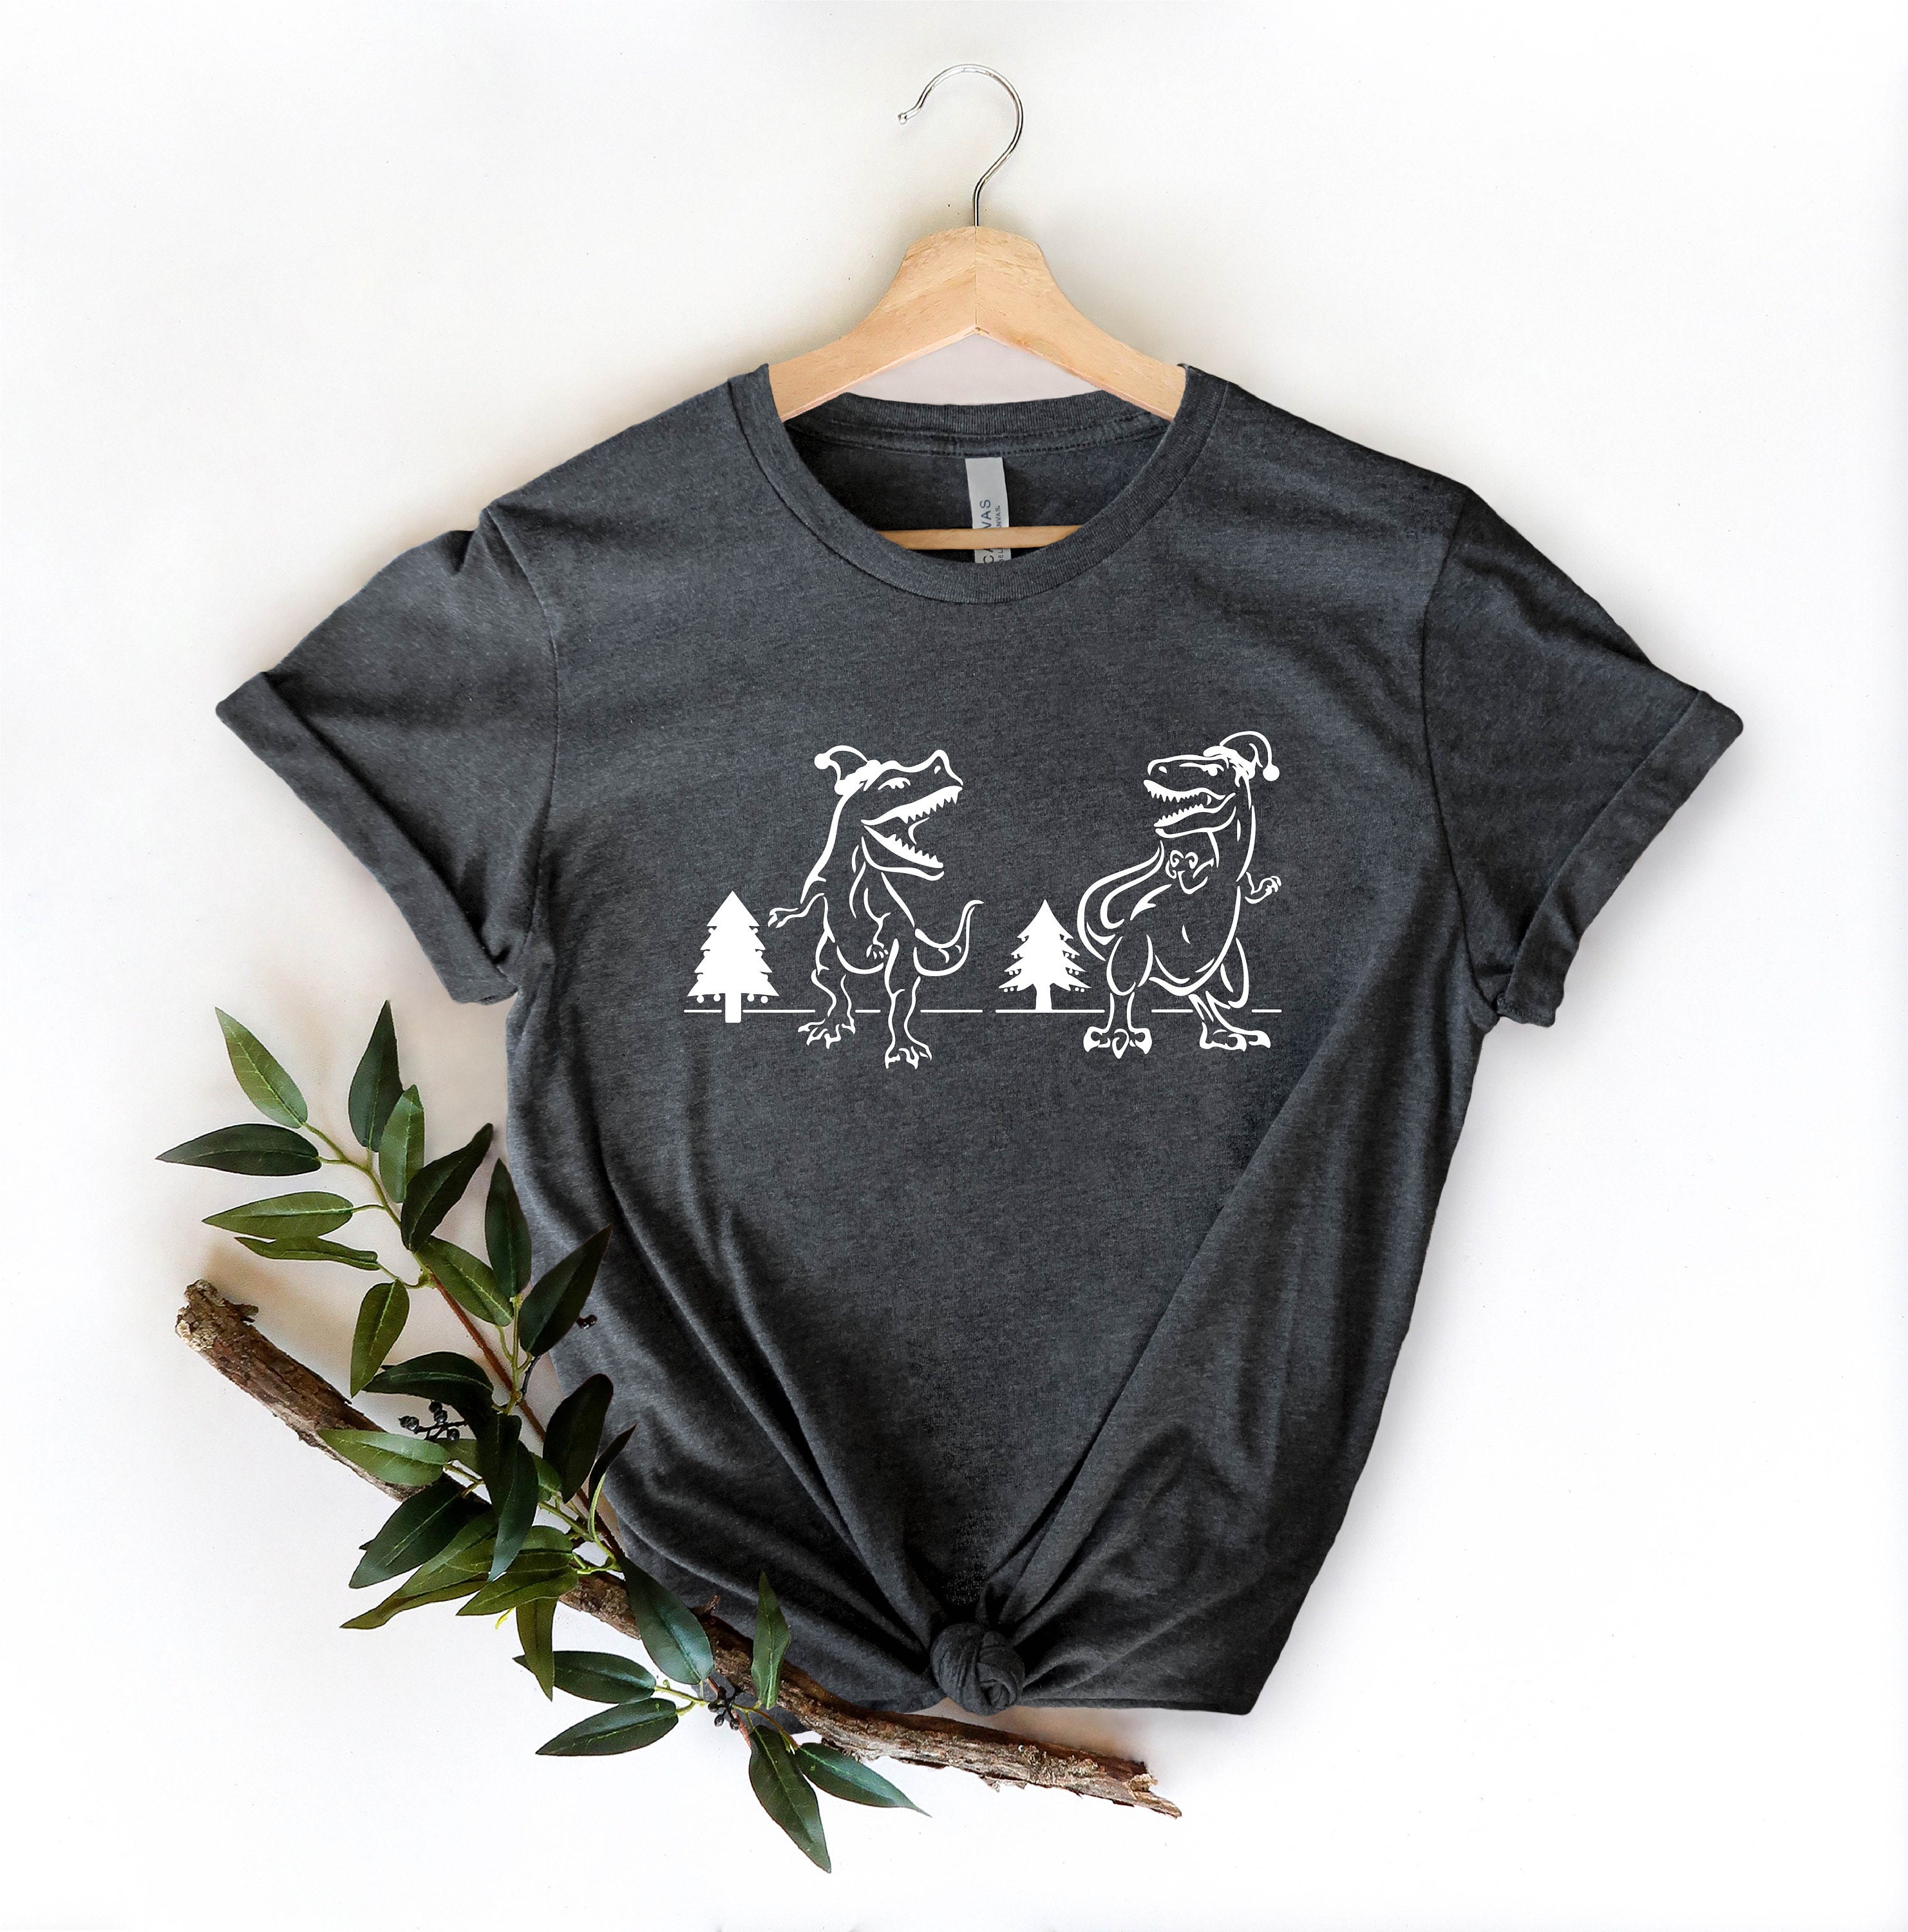 Discover Christmas Dino Shirt, Dinosaur Shirt, Dinosaur Family Shirt, Dino Shirt, Graphic Tee, Christmas Gift Shirt, Holiday Shirt, Dino Tee